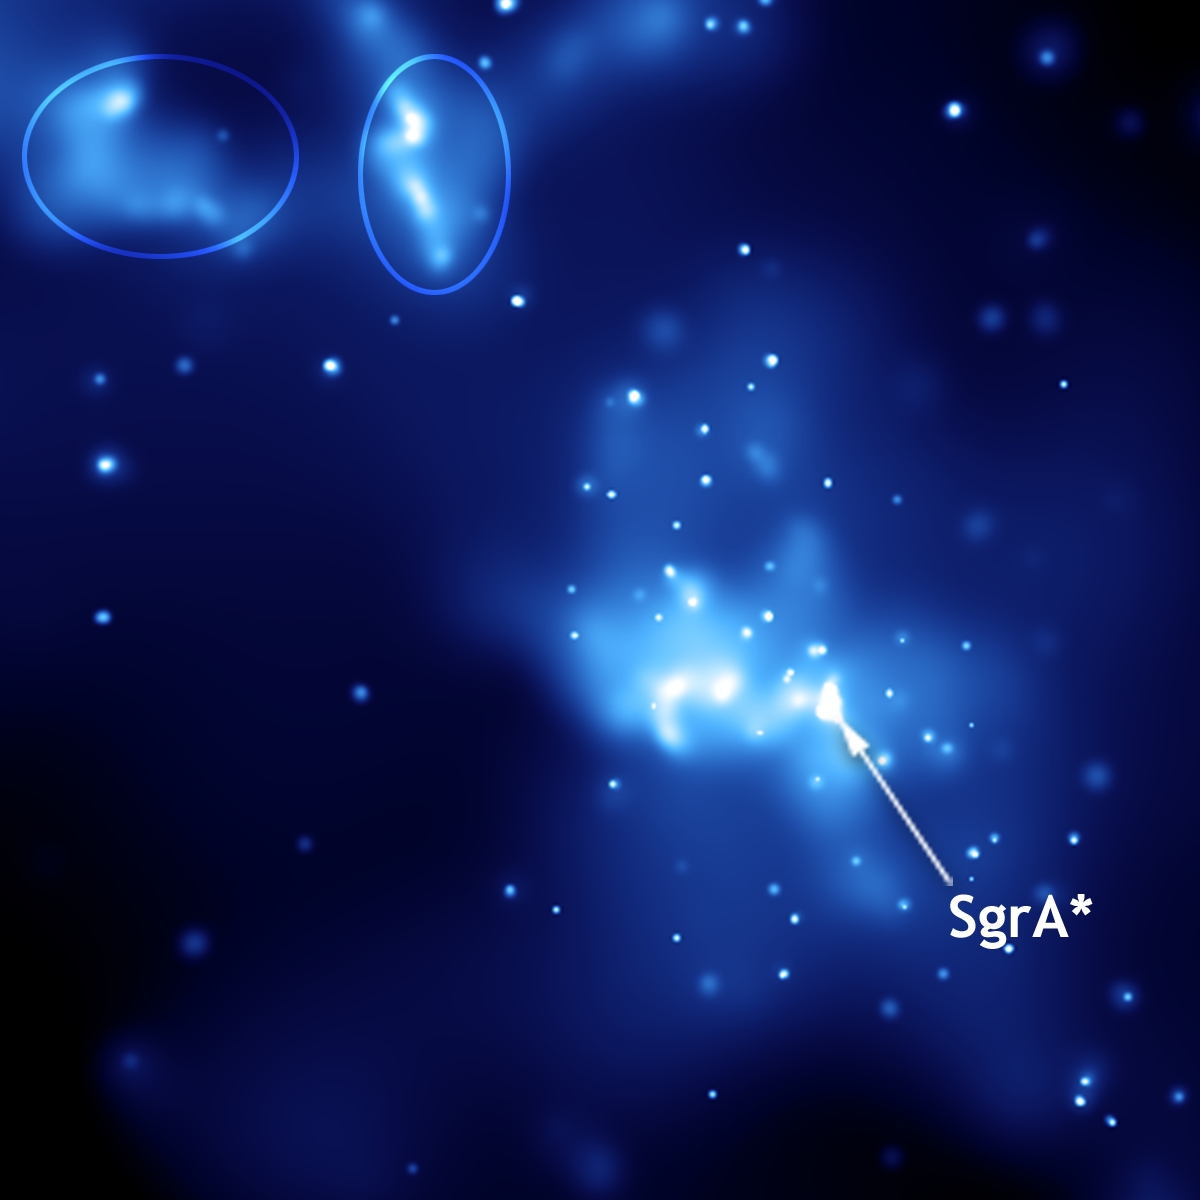 event horizon telescope sagittarius a disprove einstein